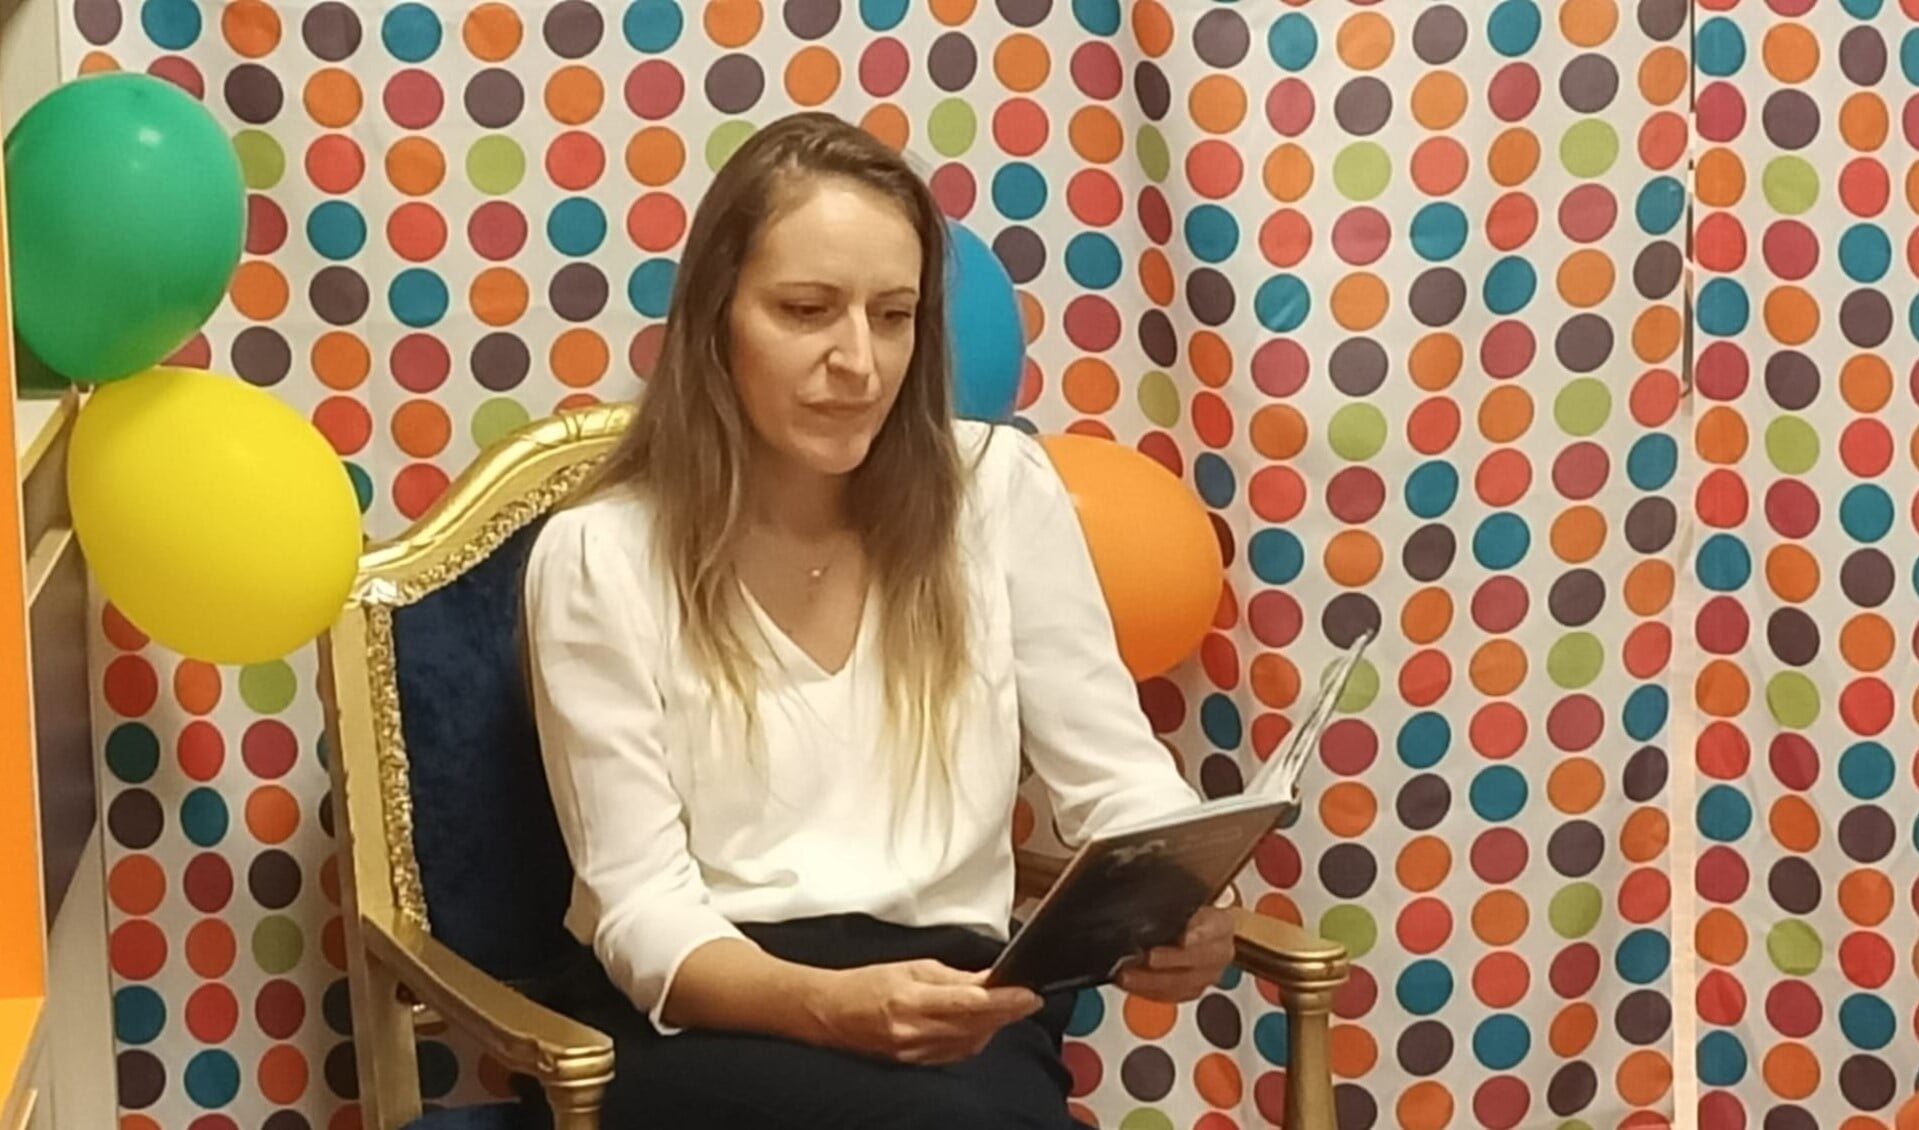 Directrice Renata Jablanovic leest voor in de nieuwe bibliotheek.